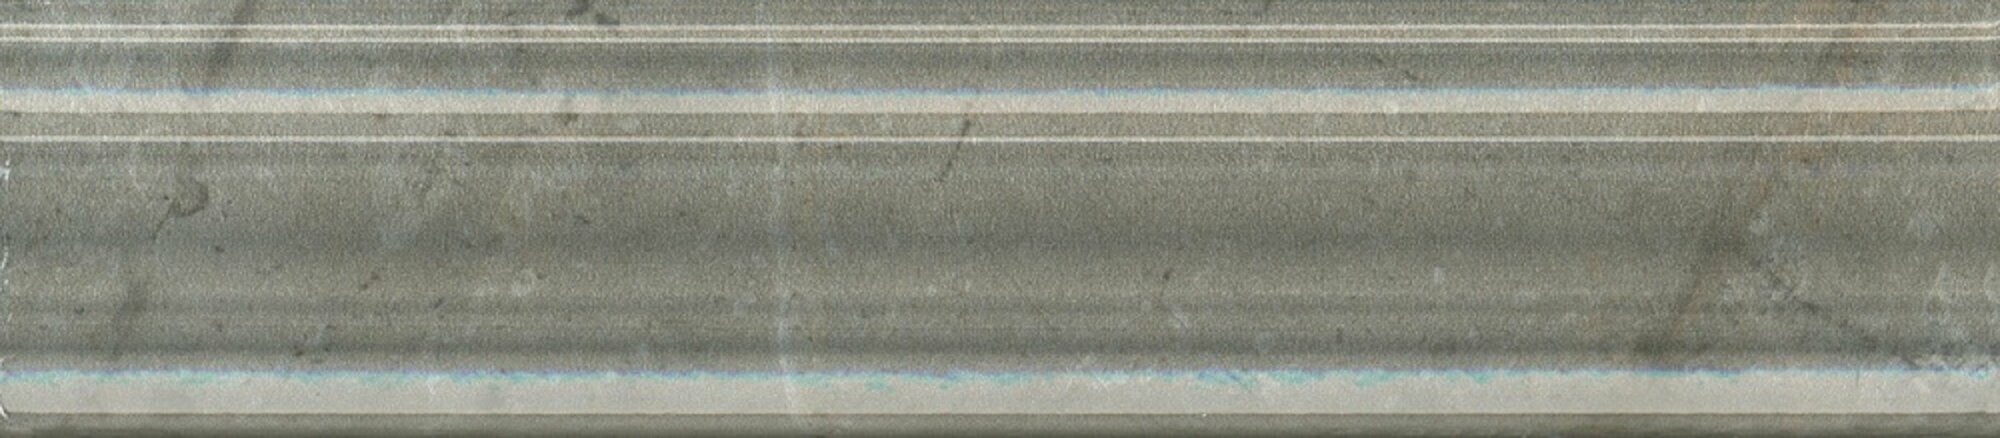 Бордюр KERAMA MARAZZI Кантата Багет серый глянцевый 25x55 см. 80 штук в упаковке